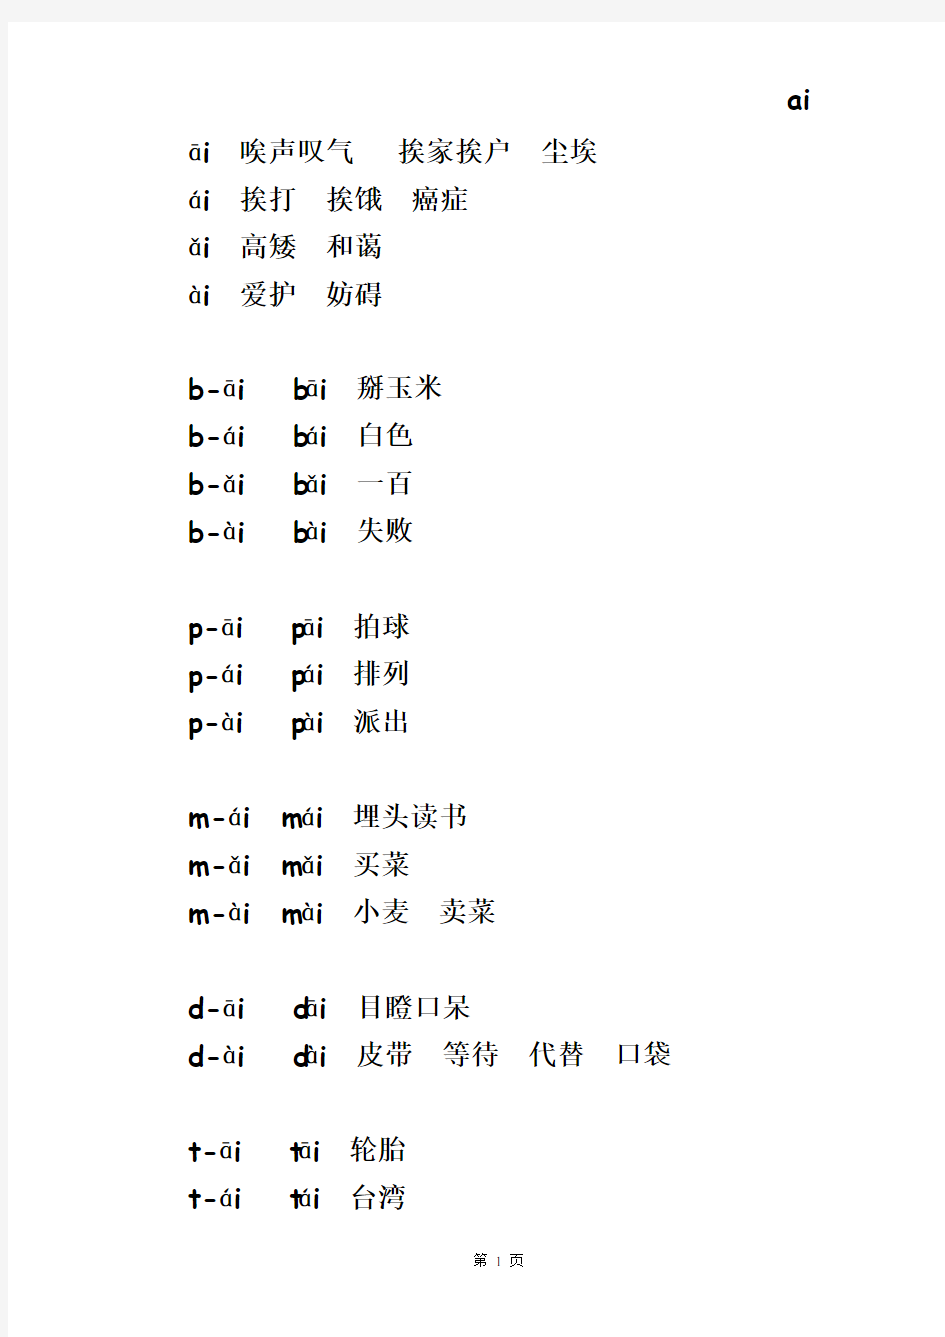 汉语拼音音节组成及常用词语